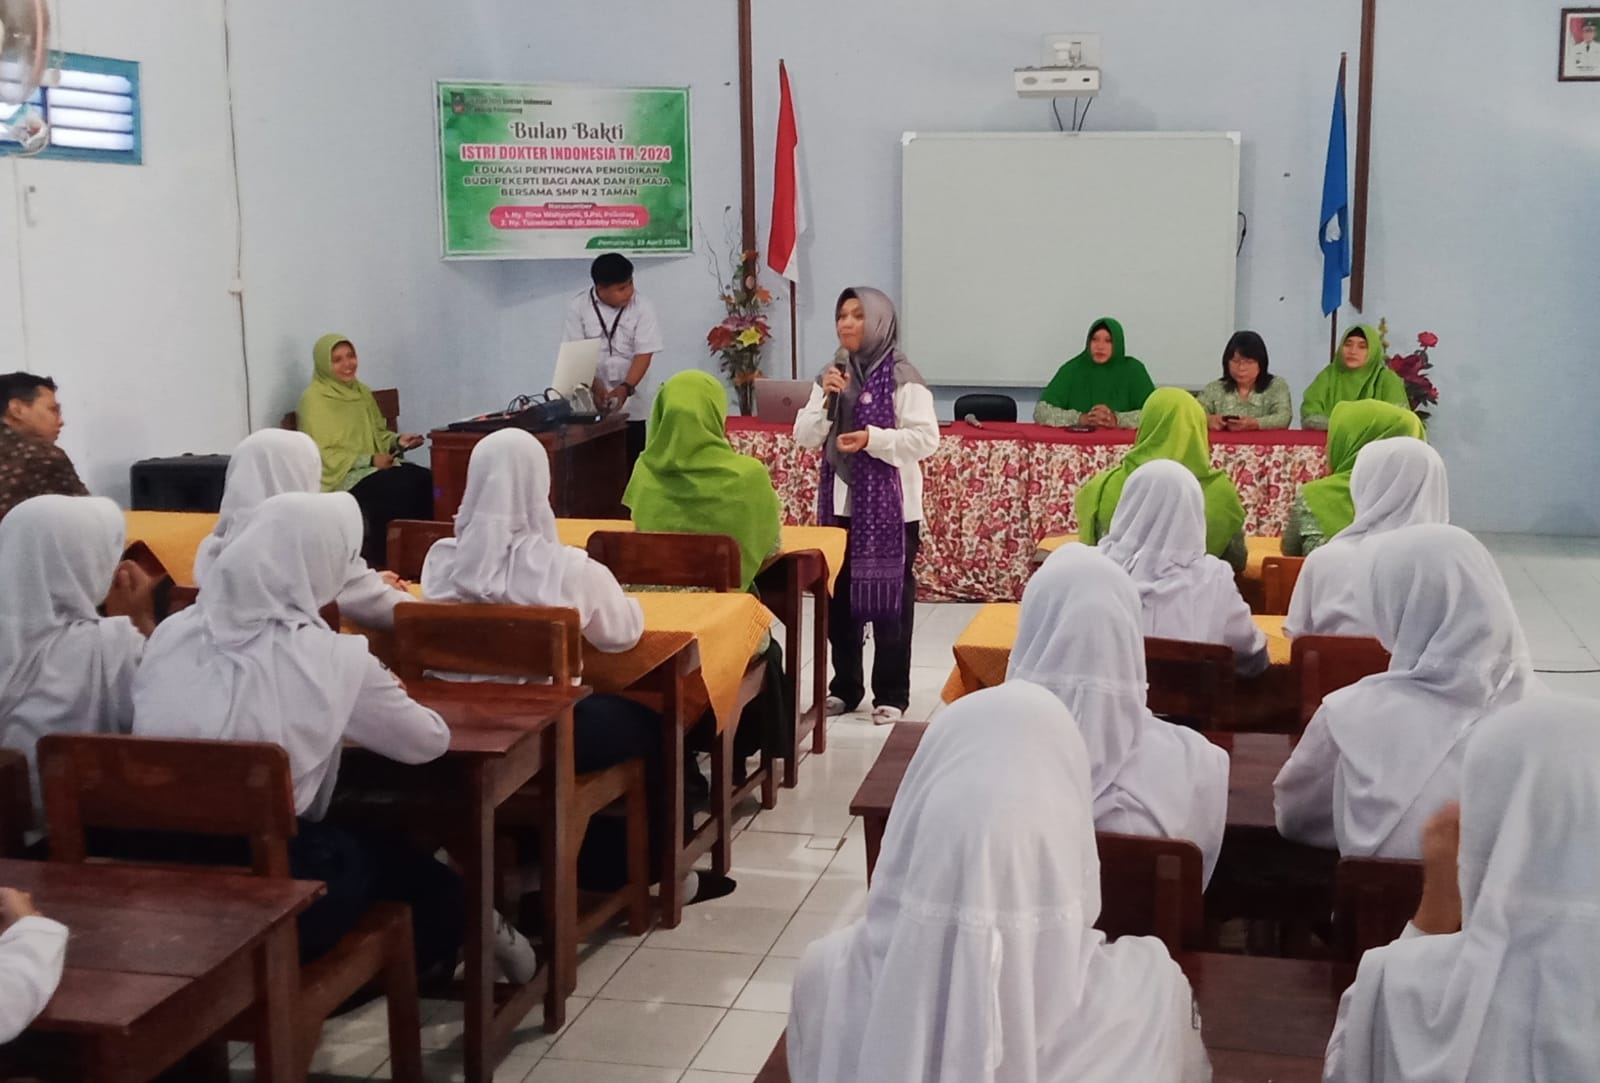 IIDI Cabang Kabupaten Pemalang Beri Edukasi tentang Budi Pekerti